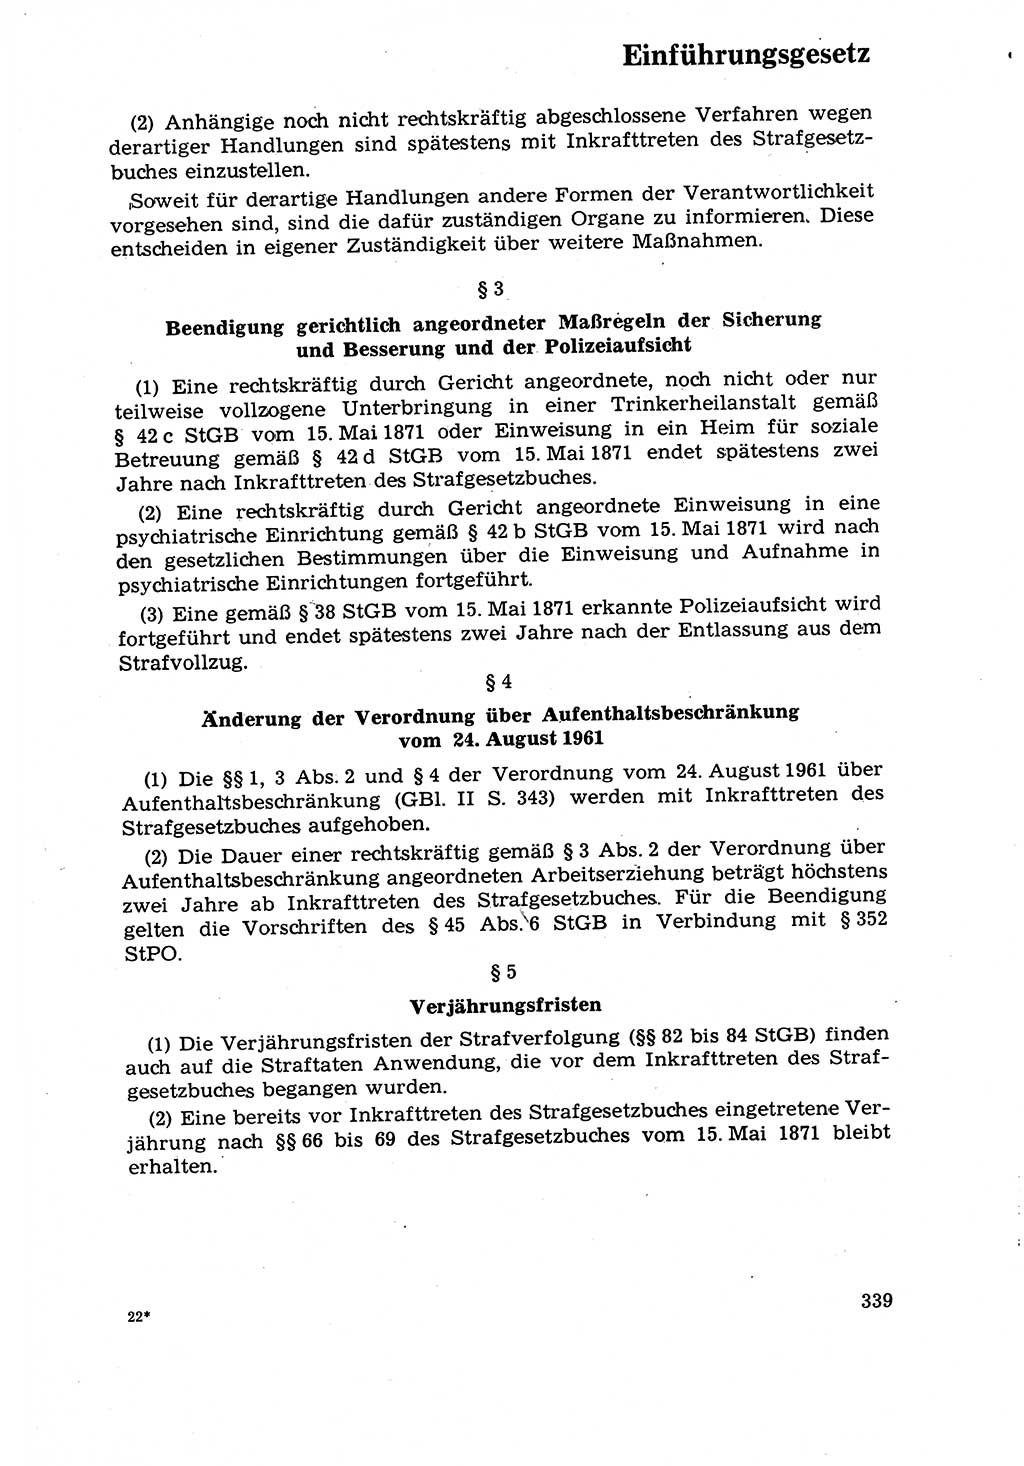 Strafrecht [Deutsche Demokratische Republik (DDR)] 1968, Seite 339 (Strafr. DDR 1968, S. 339)